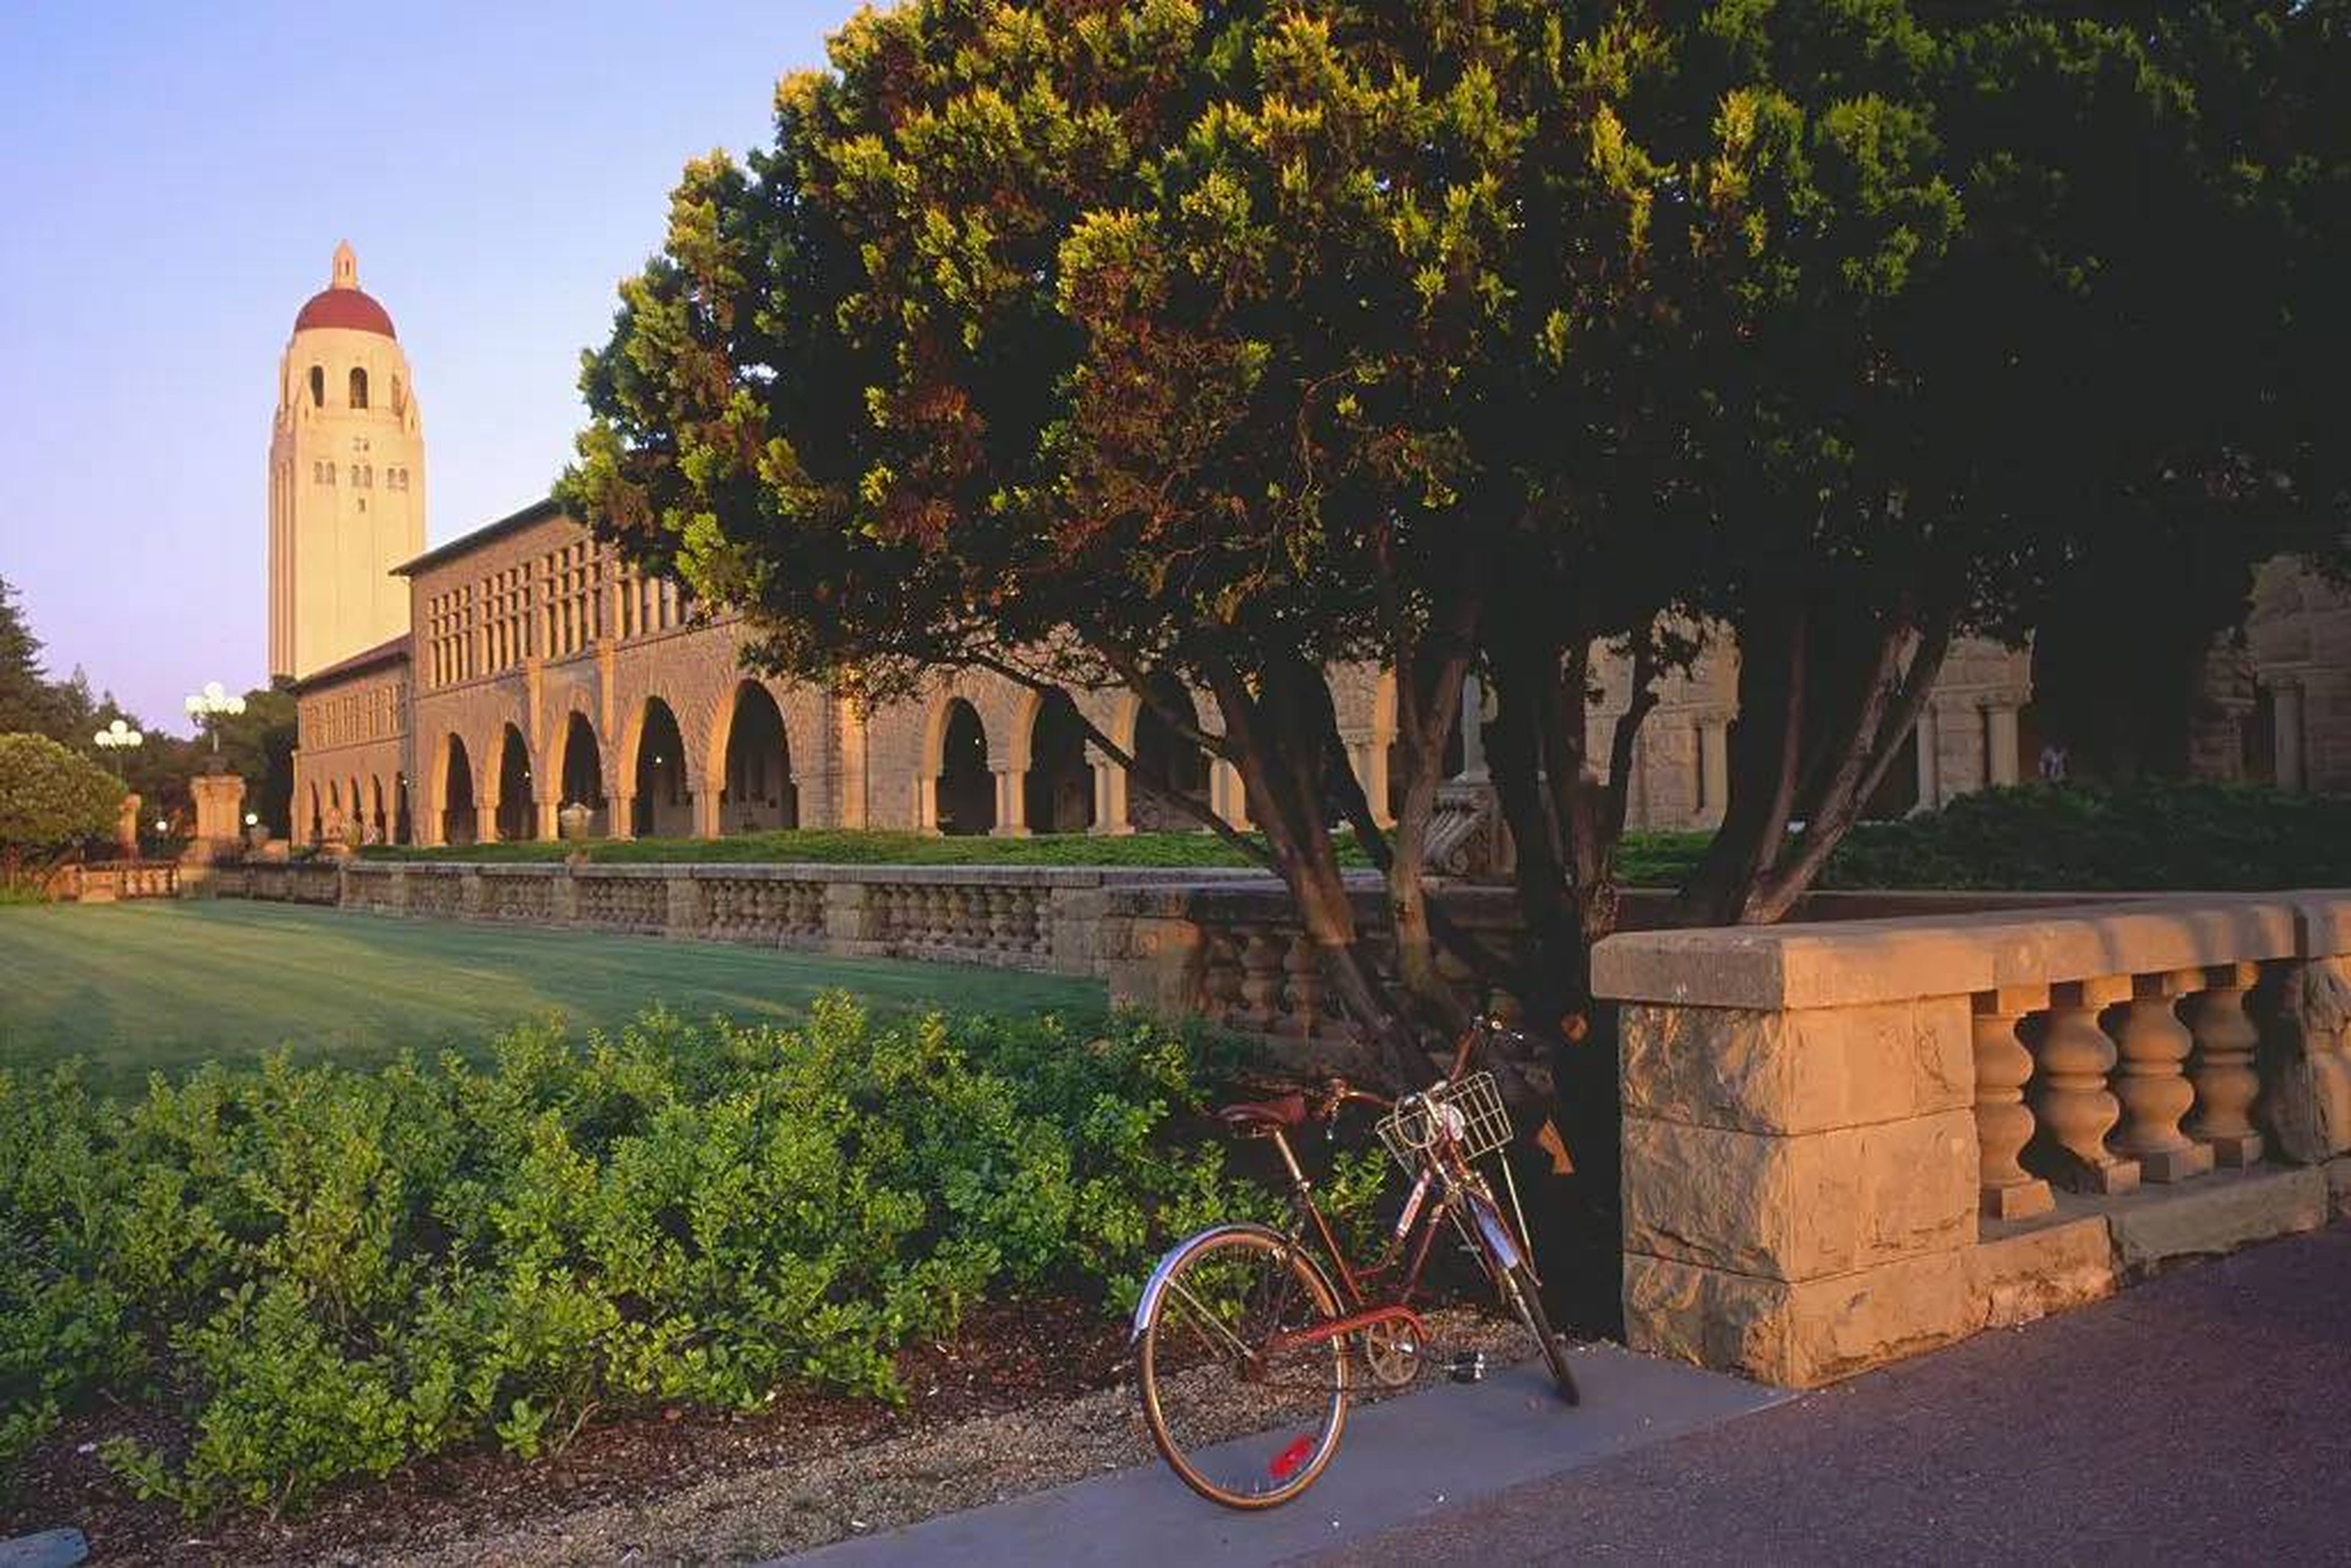 El Parque de Investigación de Stanford fue creado en la década de 1950 a través de una asociación entre la Universidad de Stanford, en la foto, y la ciudad de Palo Alto. 